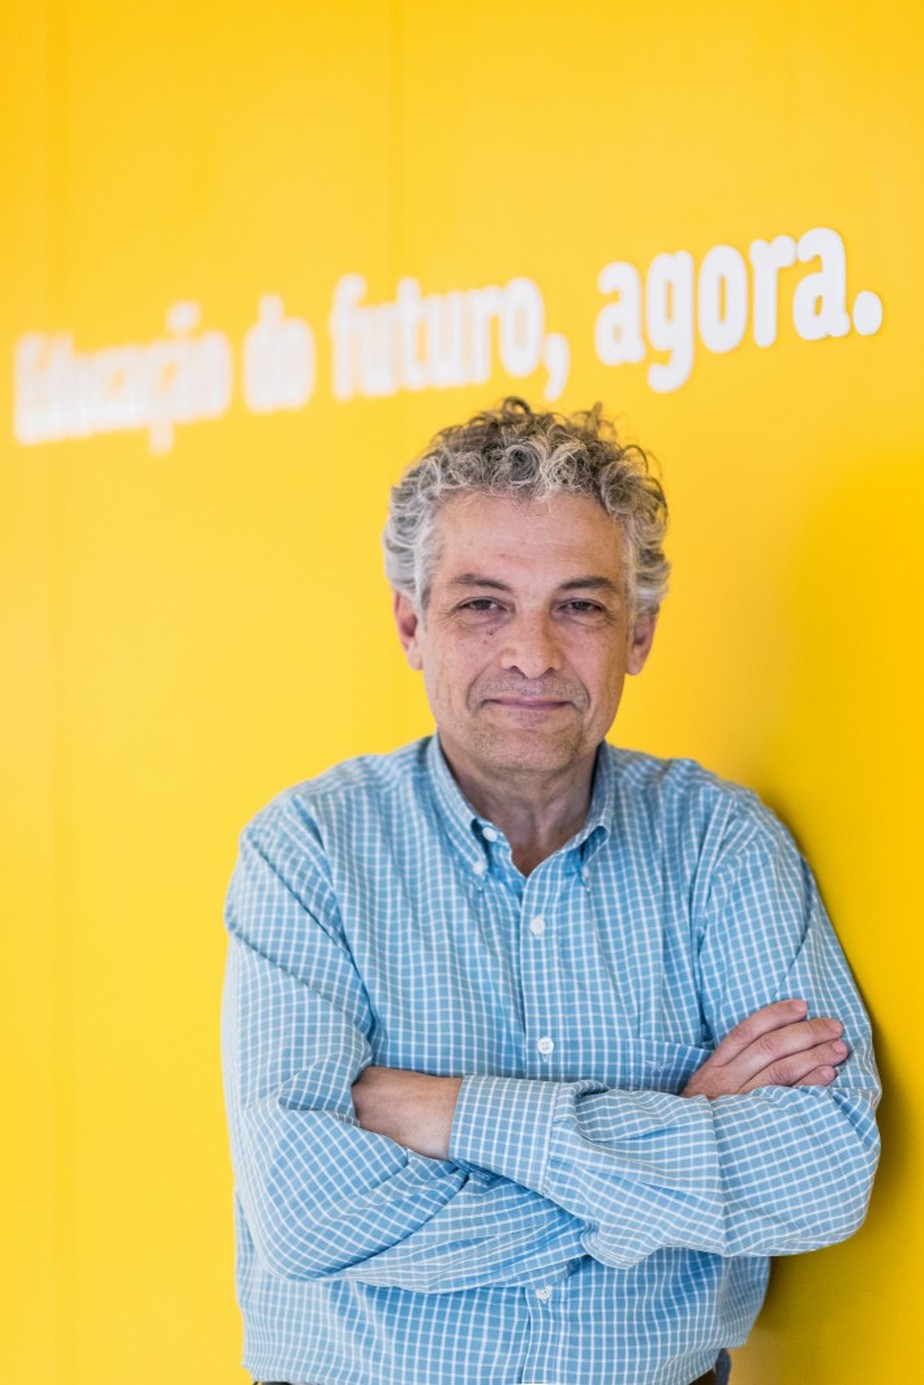 Ricardo Paes de Barros, professor do Insper e um dos criadores do Bolsa Familia